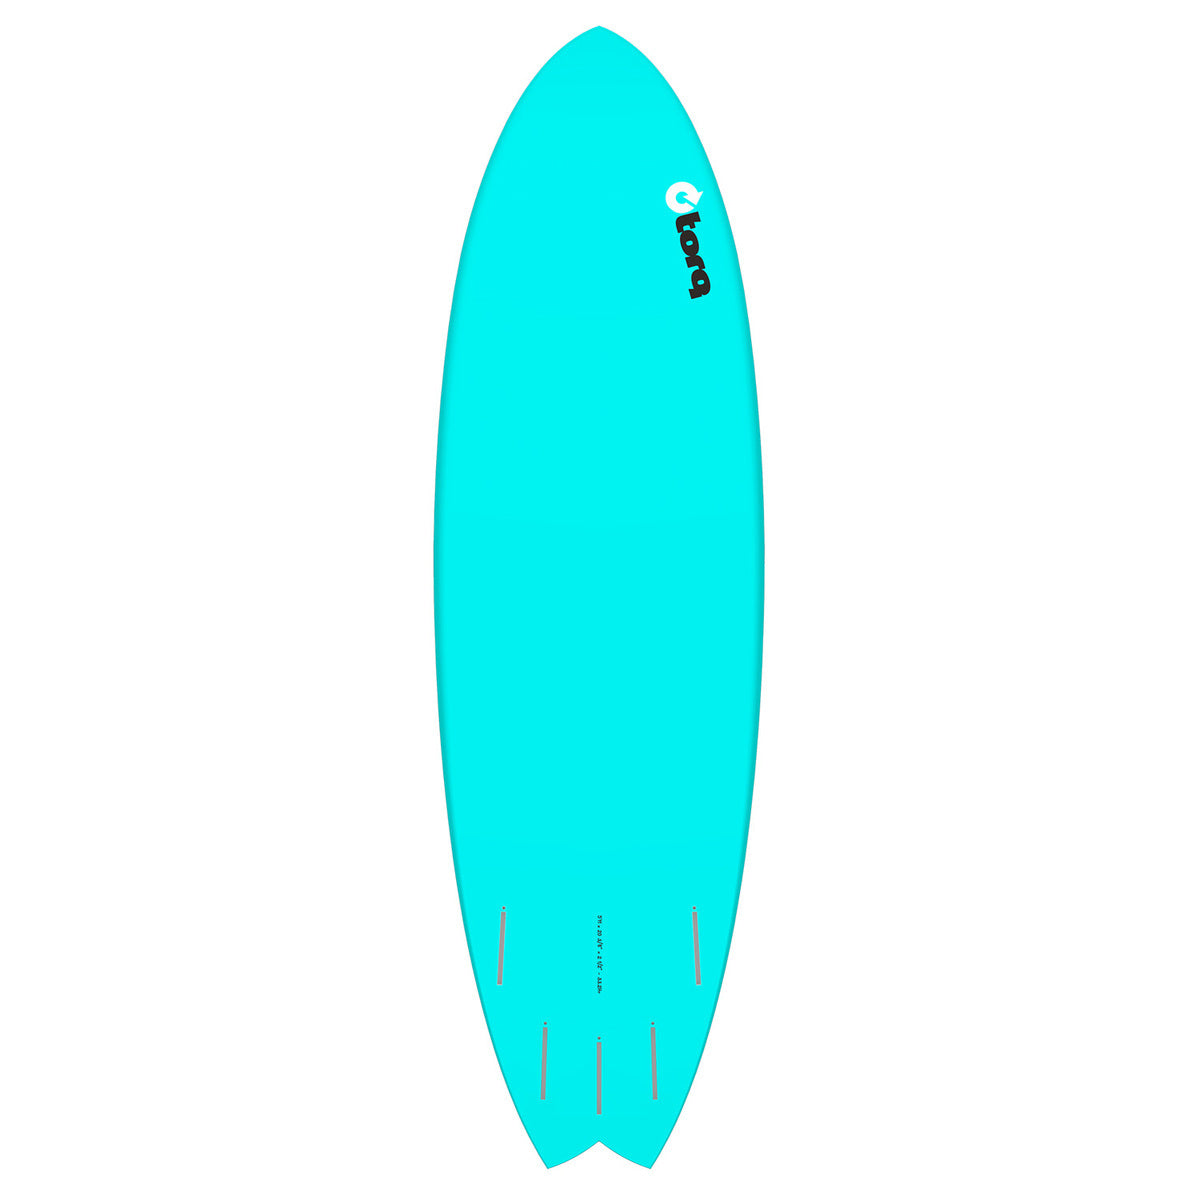 Tavola surf TORQ TET 5'11'' FISH PINLINE MIAMI BLUE